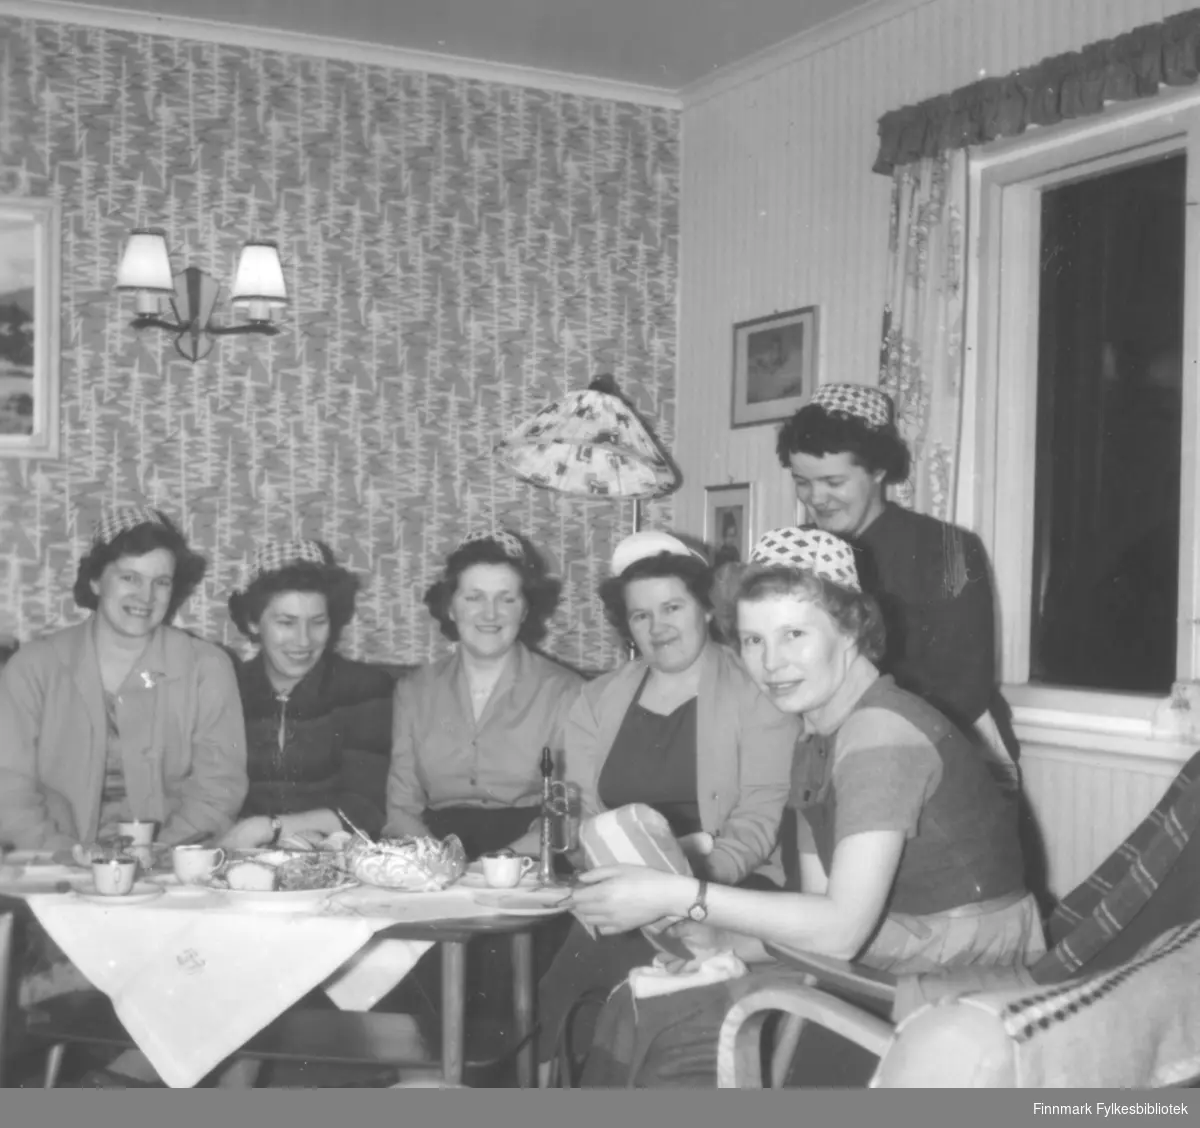 Syforening i Fosseveien 3, ca. 1960-1965. Bildet ser ut til å være tatt på samme foreningsmøte som 06046-014, men her har alle medlemmene tatt på seg hatter med lik fasong. Det står et instrument på bordet